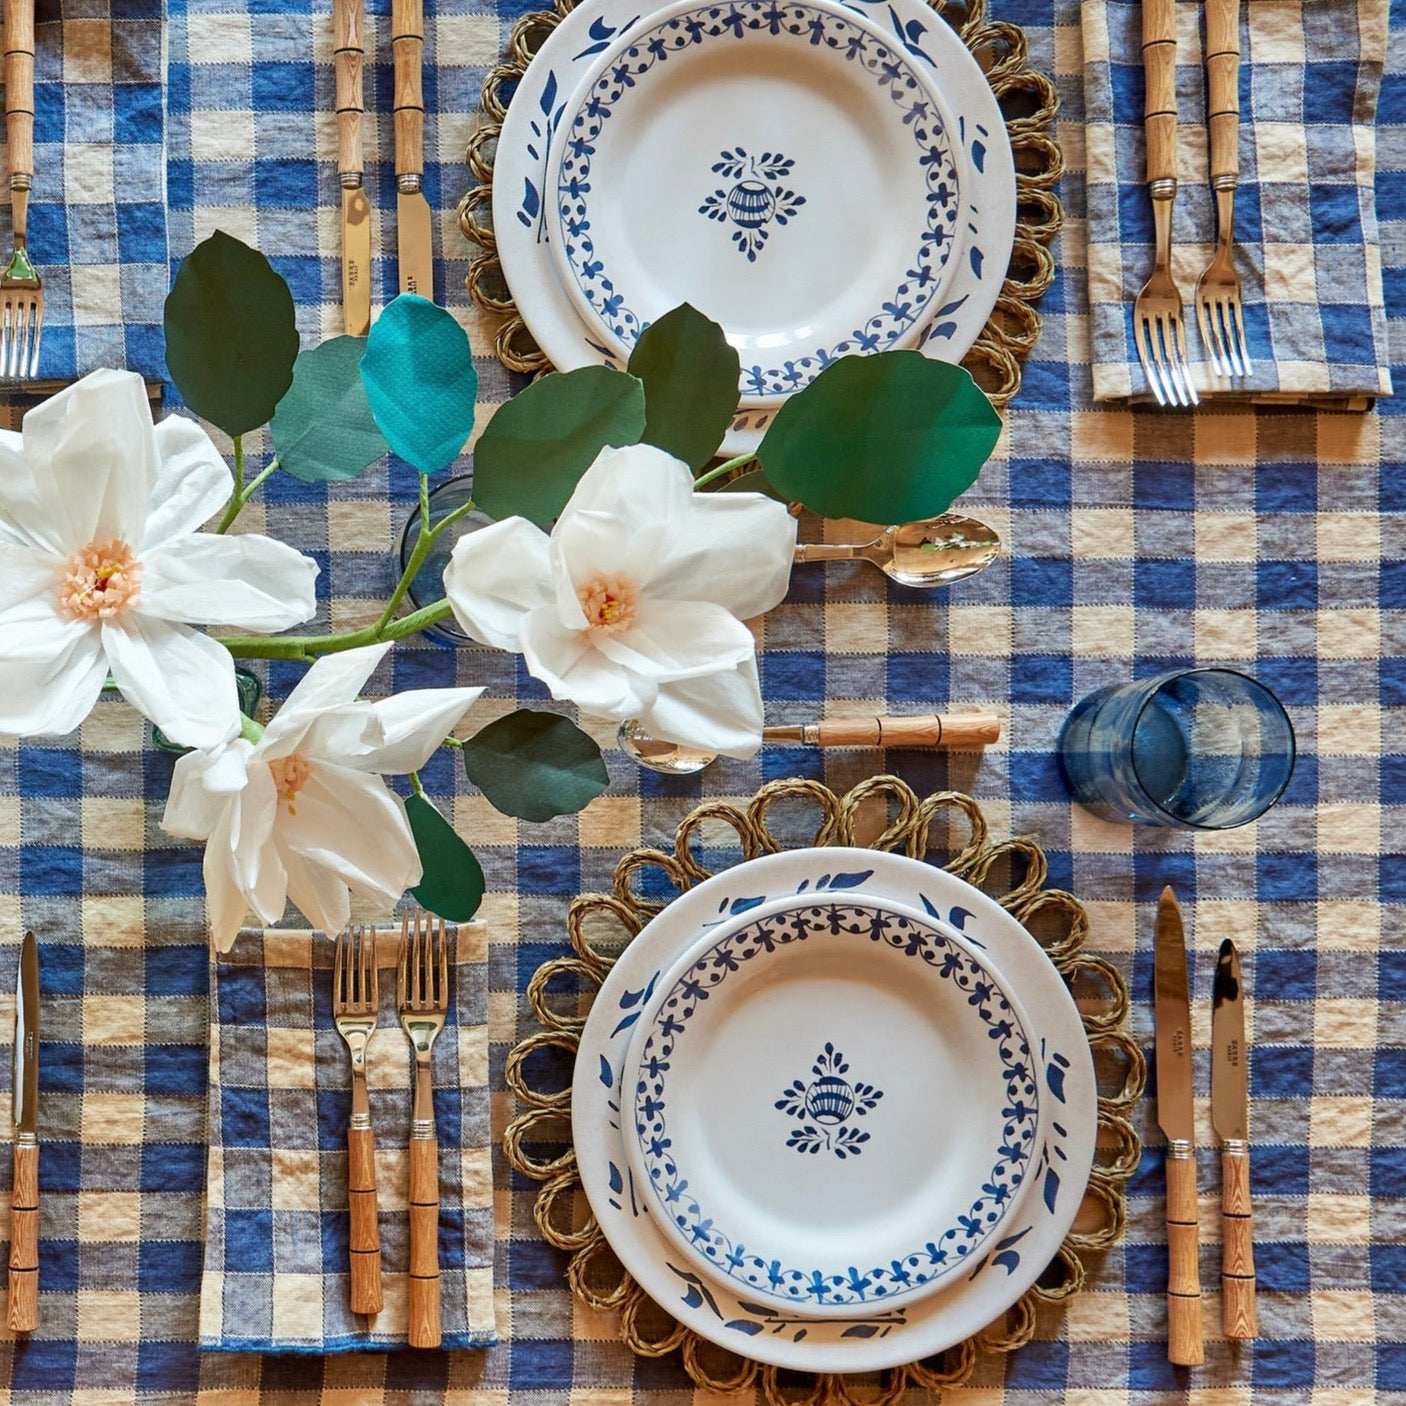 Bleu de Delft Vintage Gingham Tablecloth